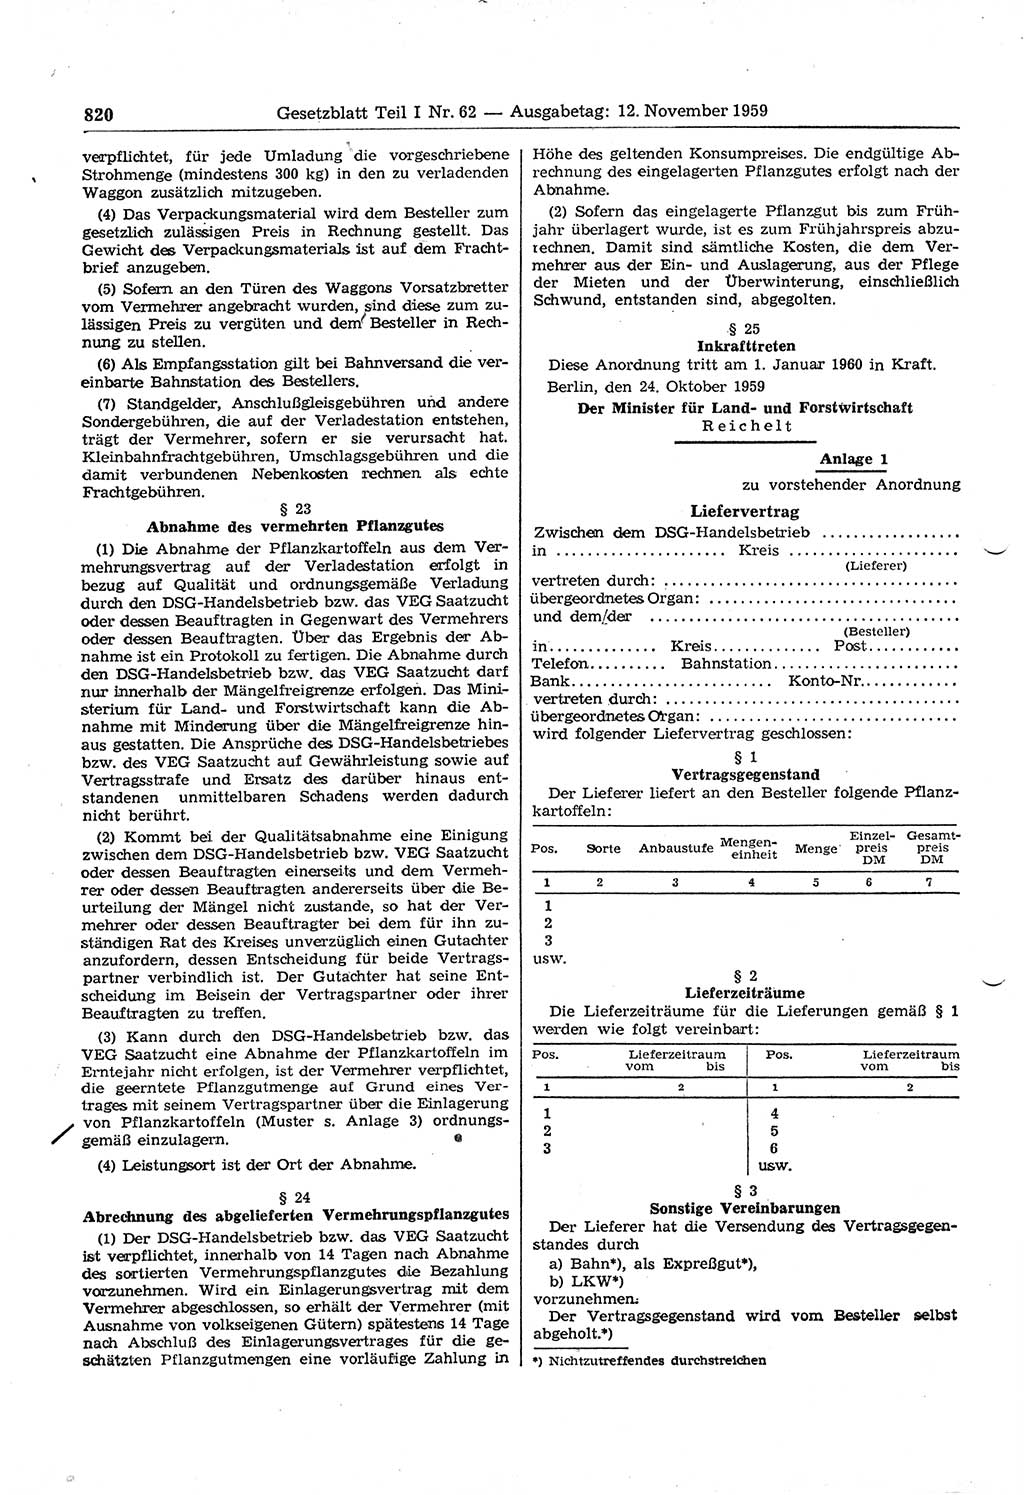 Gesetzblatt (GBl.) der Deutschen Demokratischen Republik (DDR) Teil Ⅰ 1959, Seite 820 (GBl. DDR Ⅰ 1959, S. 820)